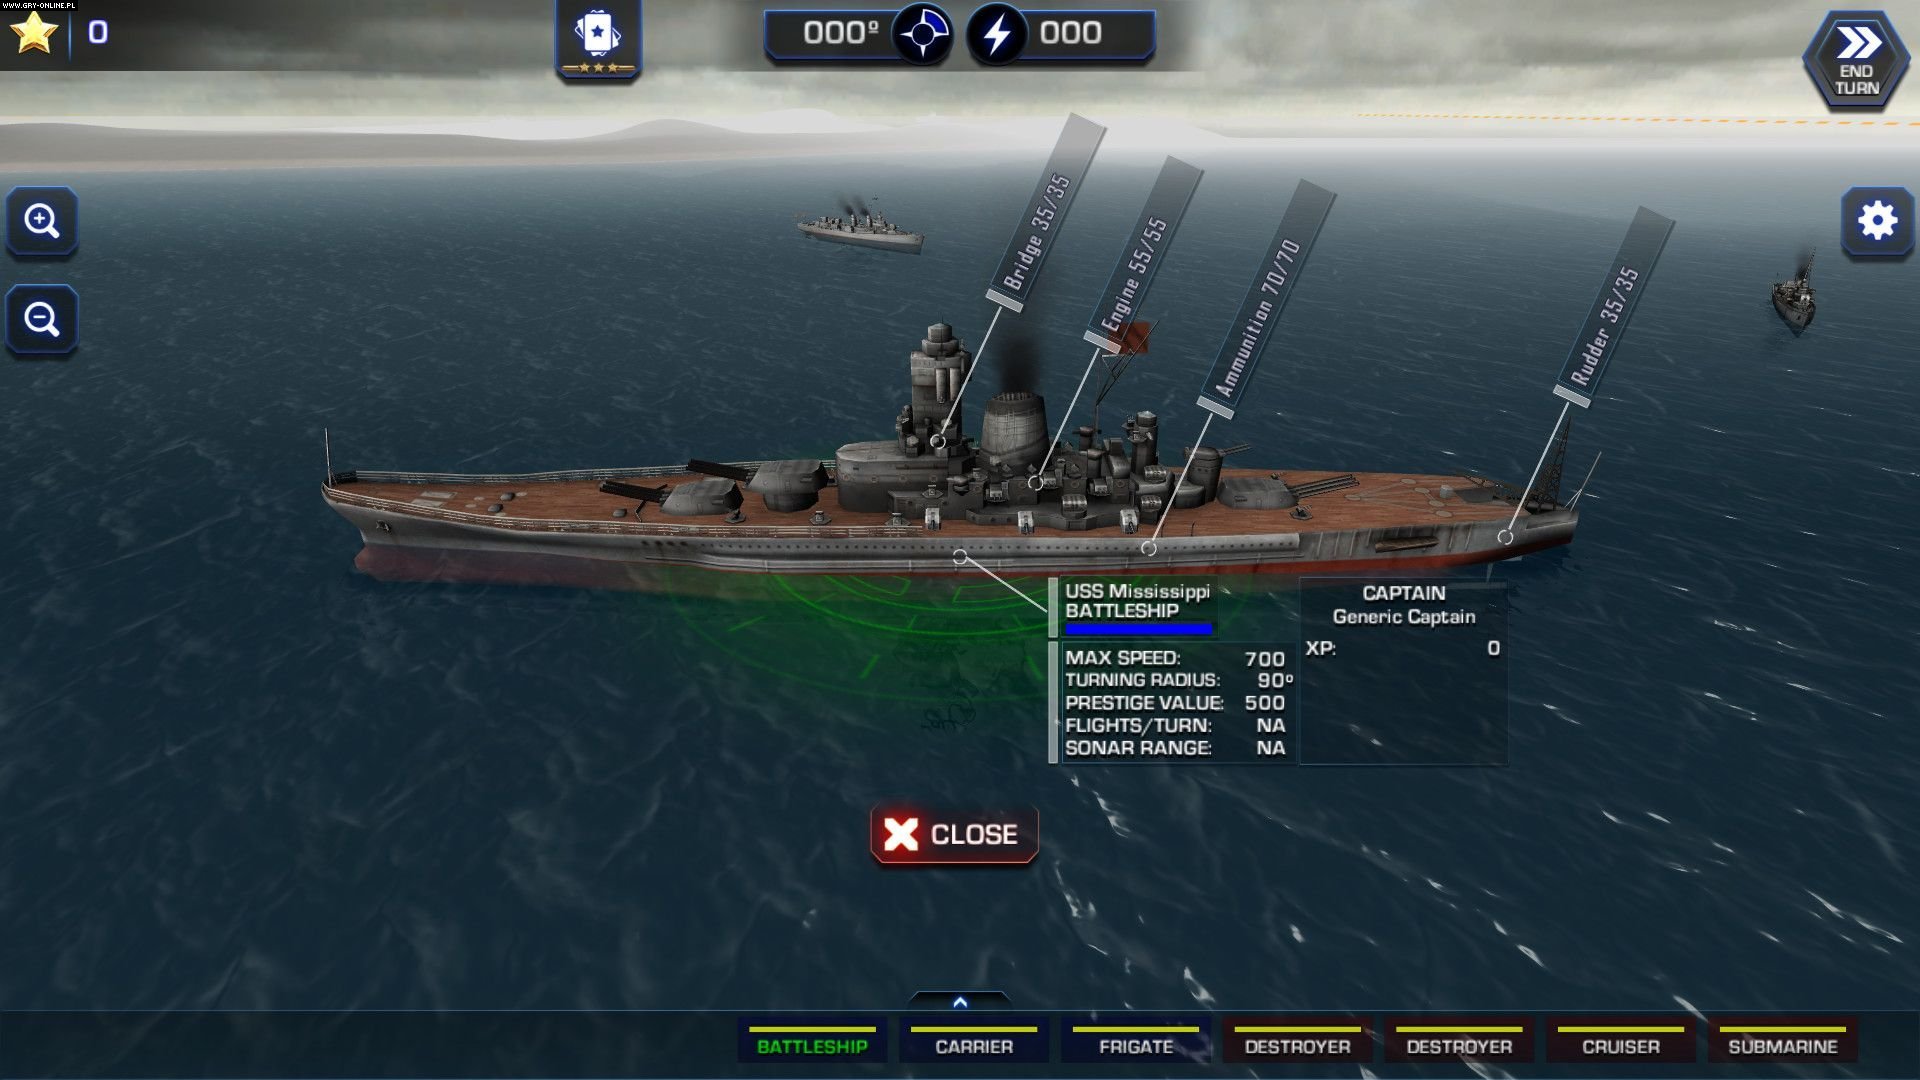 battle fleet 2 mod apk